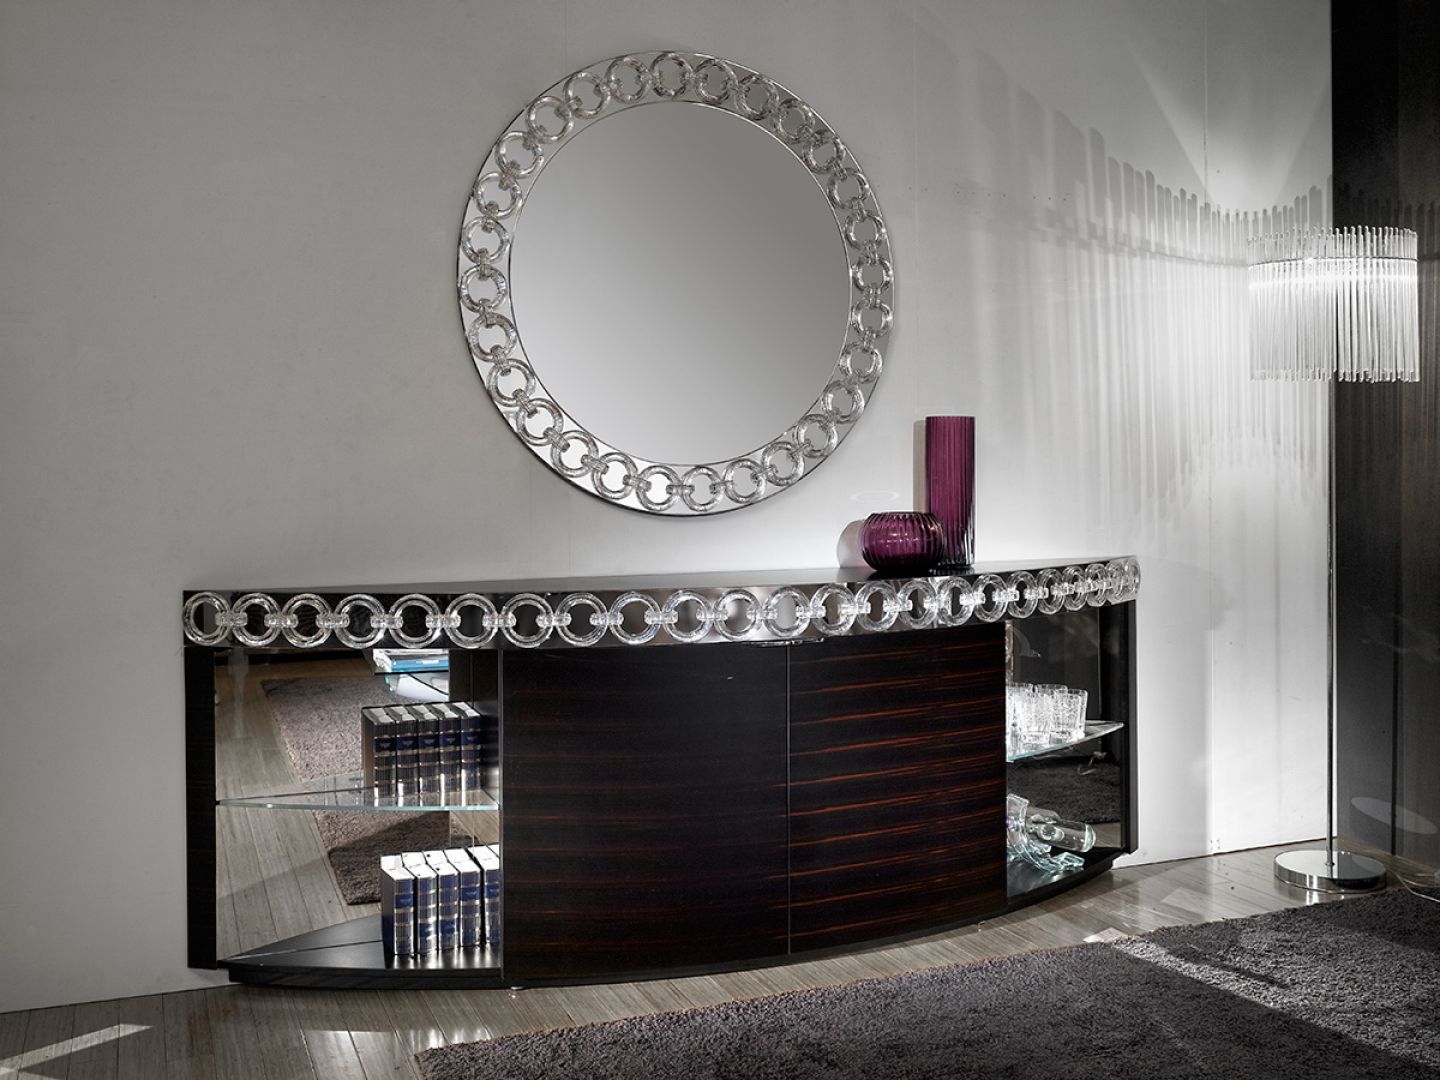 Marka Reflex łączy w swoich meblach szkło Murano z litym drewnem, marmurem i stalą. Fot. eEflex